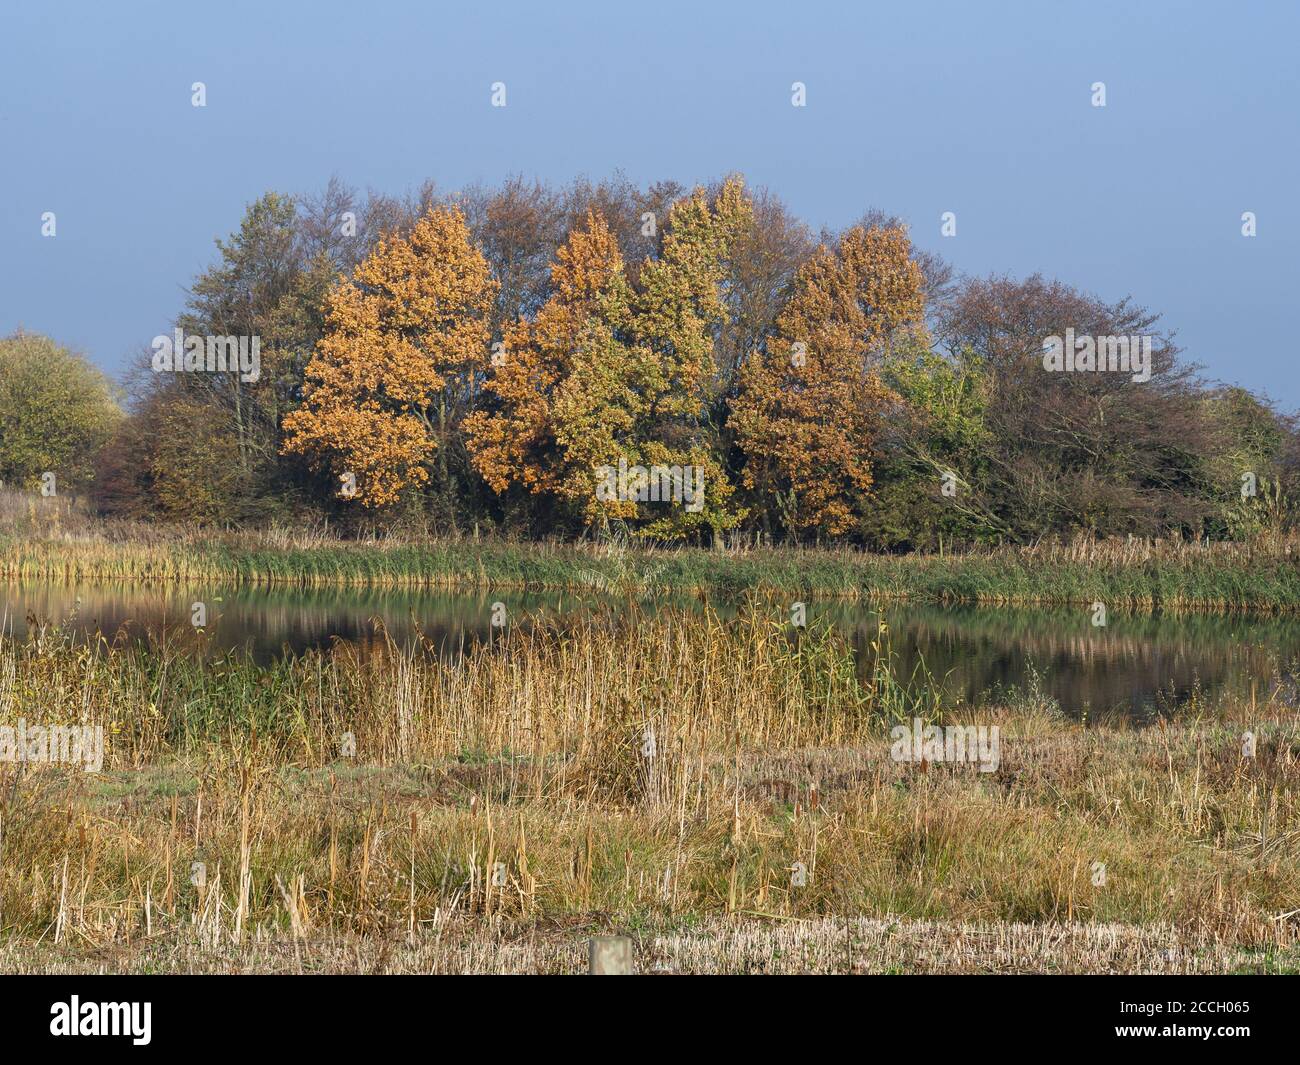 Vea los humedales y los árboles con follaje otoñal en la Reserva Natural de Staveley, North Yorkshire, Inglaterra Foto de stock